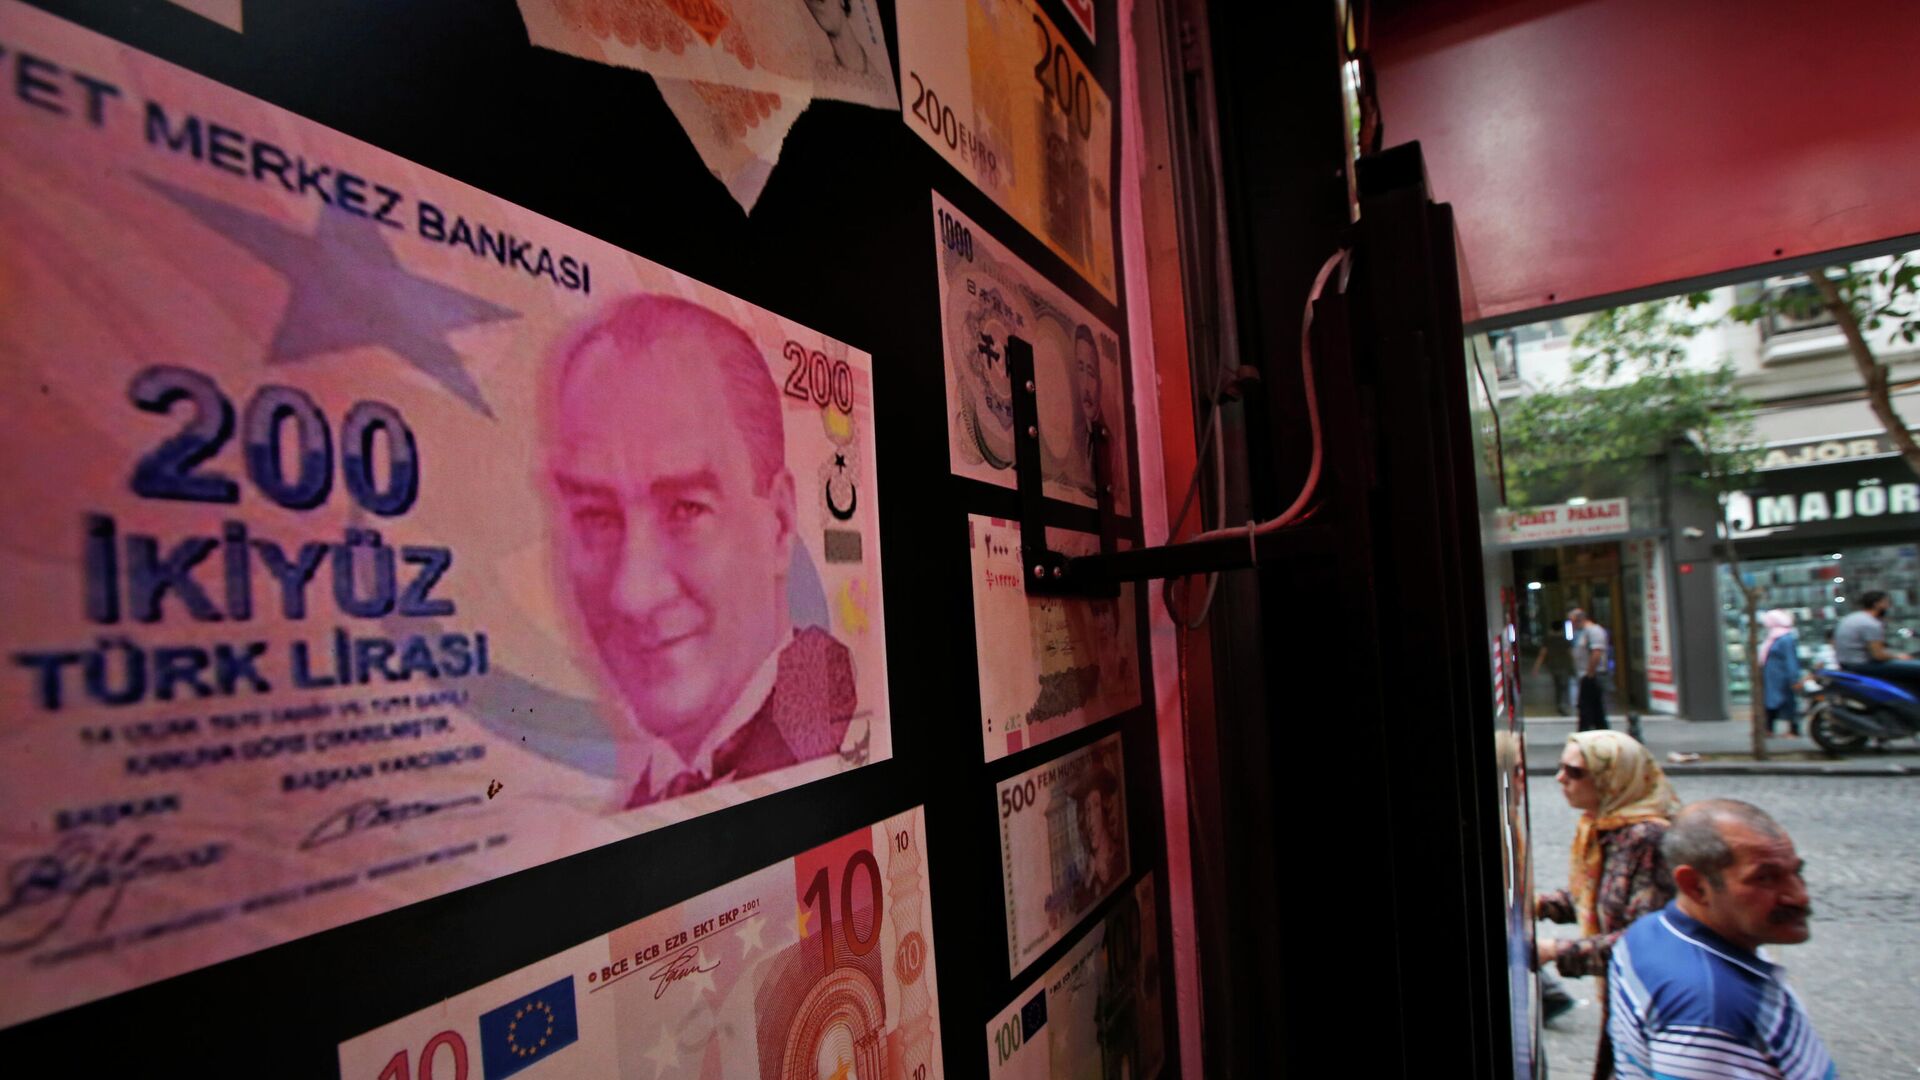 Изображение банкноты номиналом 200 турецких лир с фотографией Мустафы Кемаля Ататюрка на обменном пункте в Стамбуле0